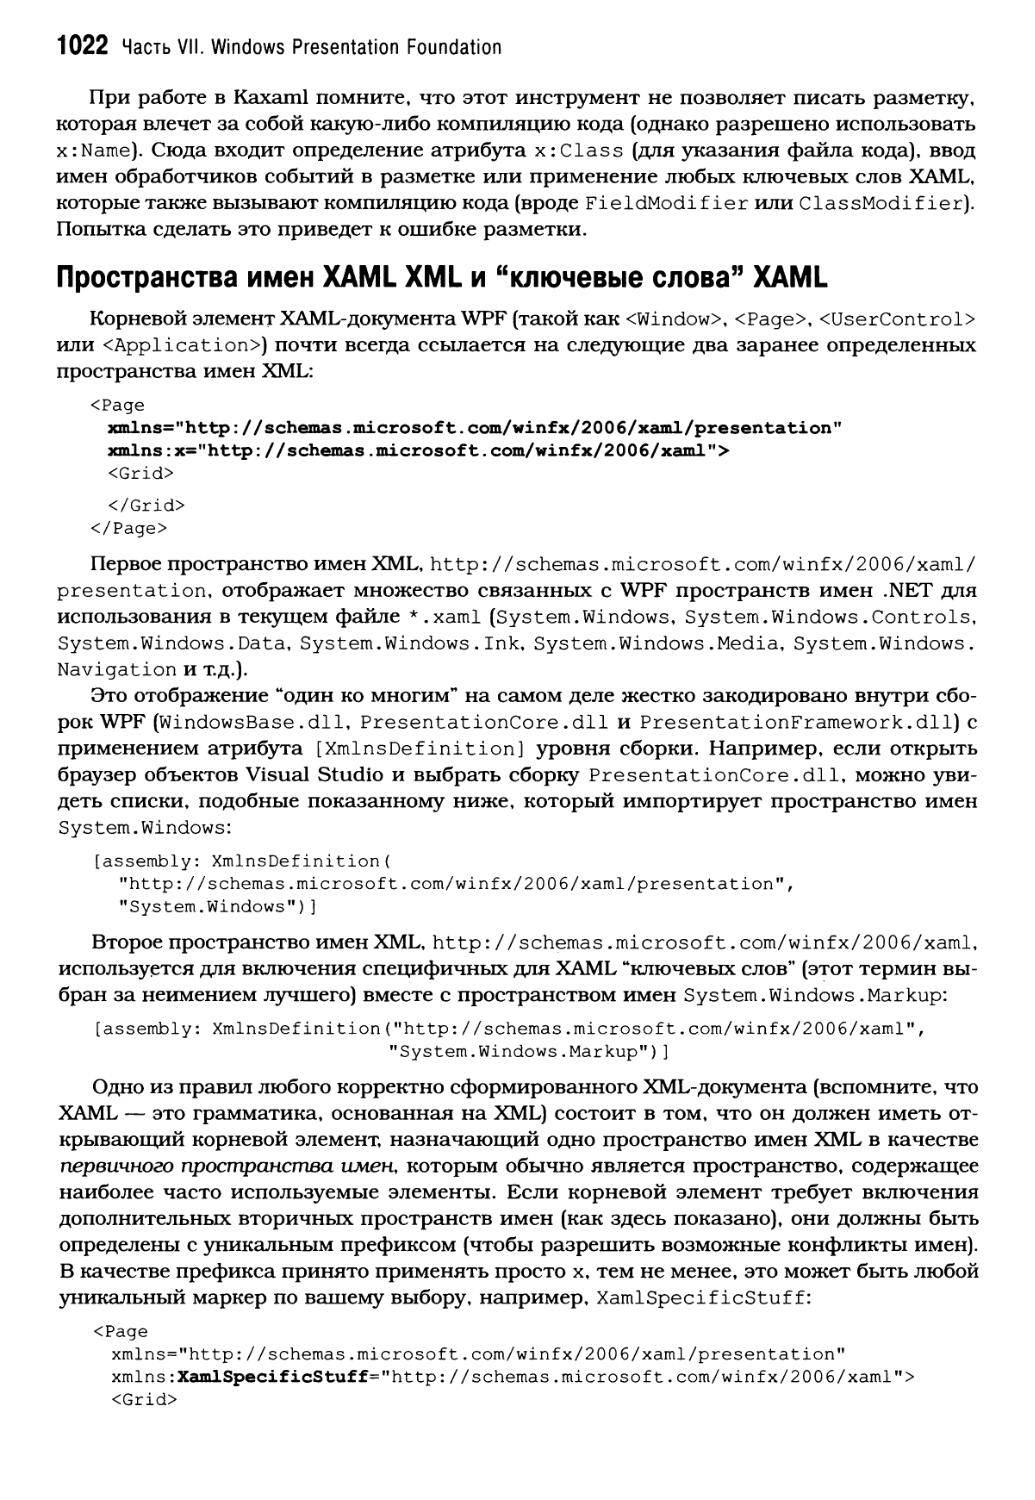 Пространства имен XAML XML и “ключевые слова” XAML